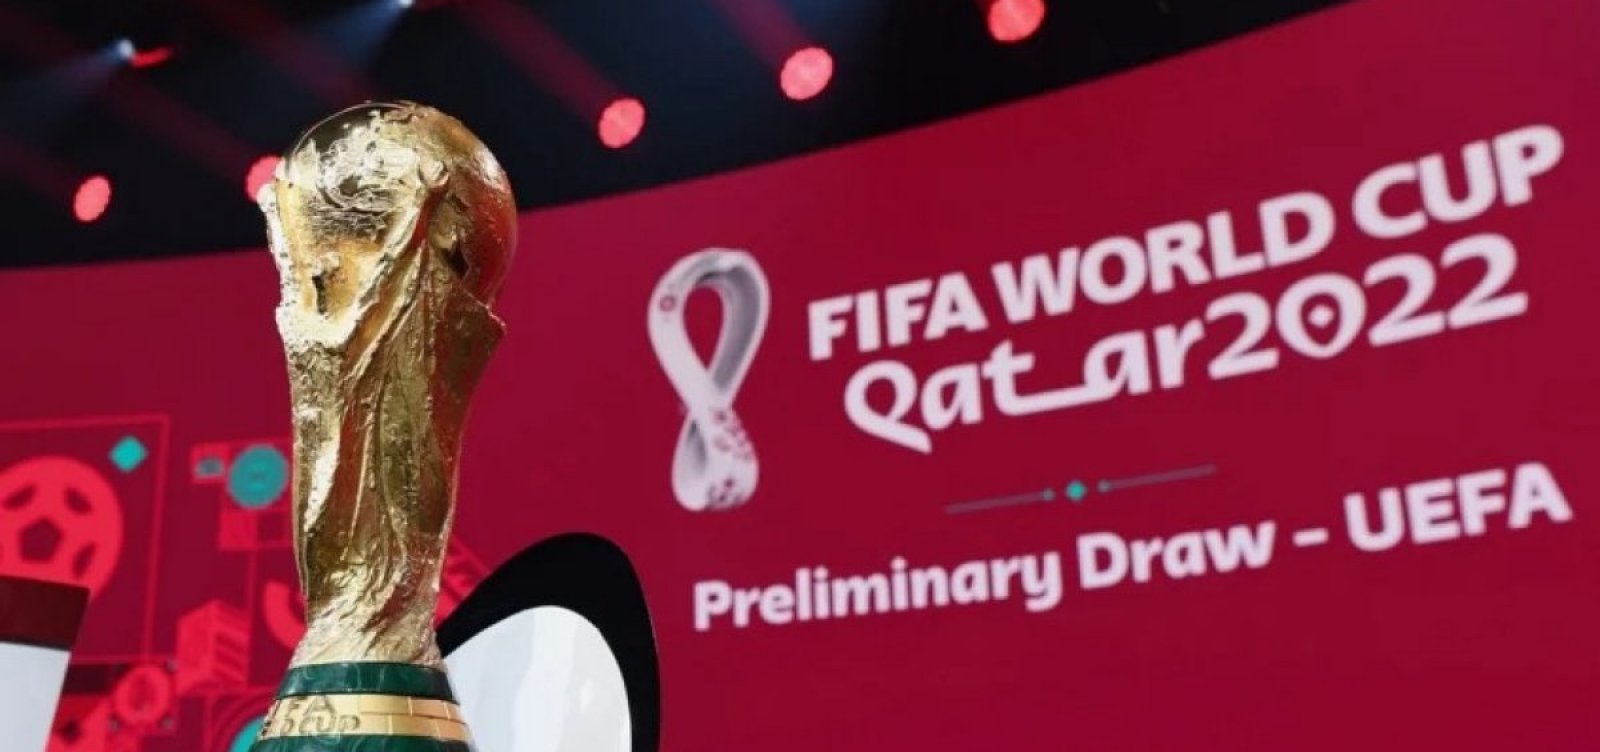 Copa do Mundo 2022 já tem quase 3 milhões de ingressos vendidos, diz Fifa